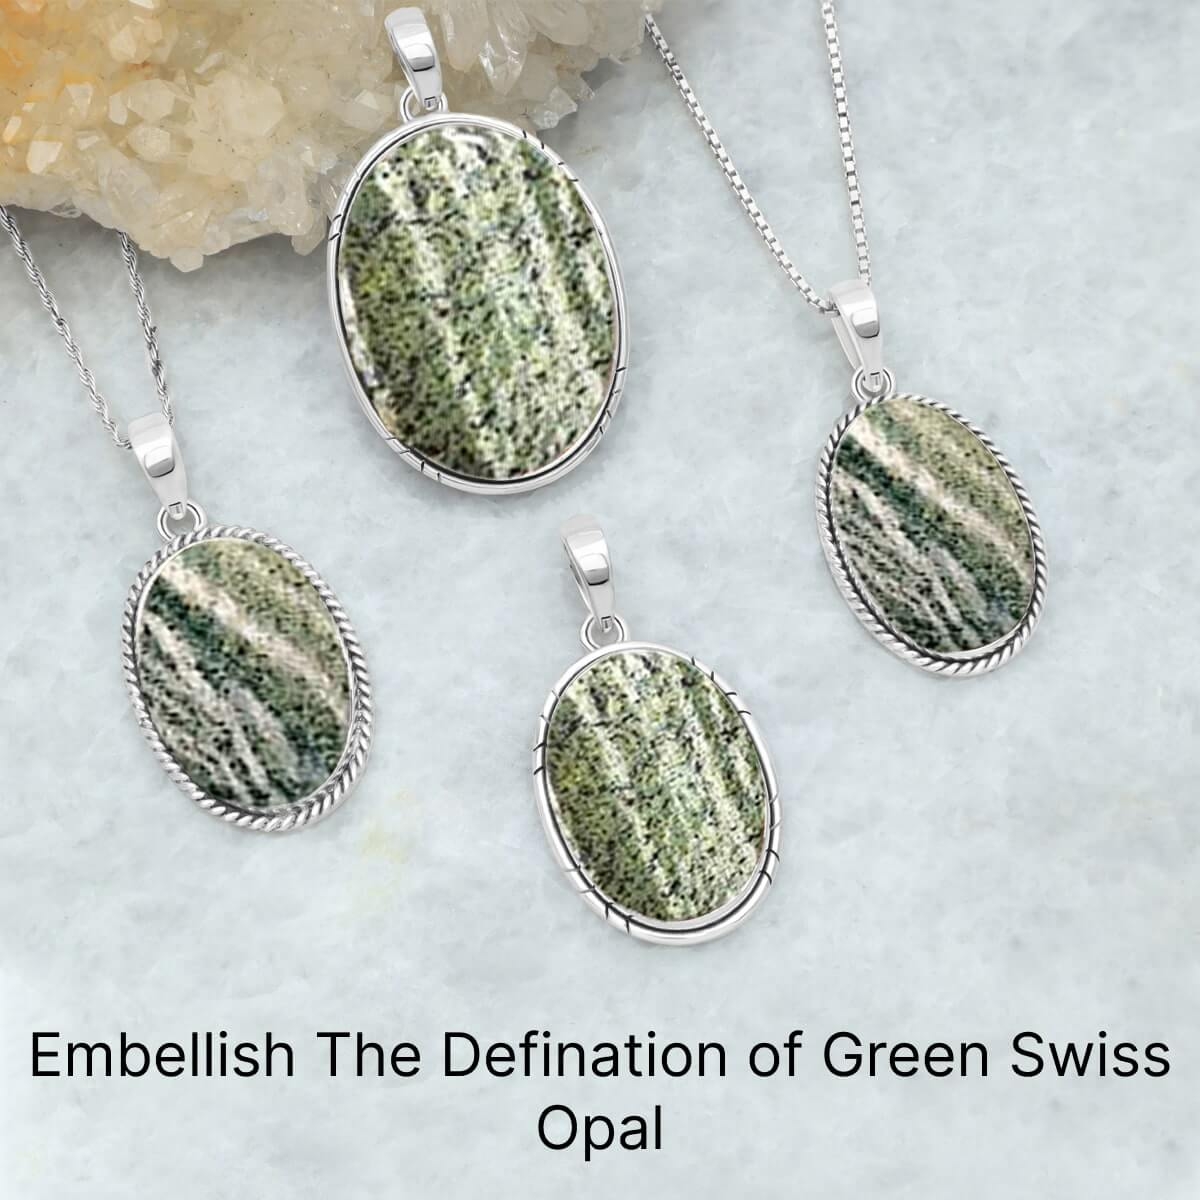 What is Green Swiss Opal